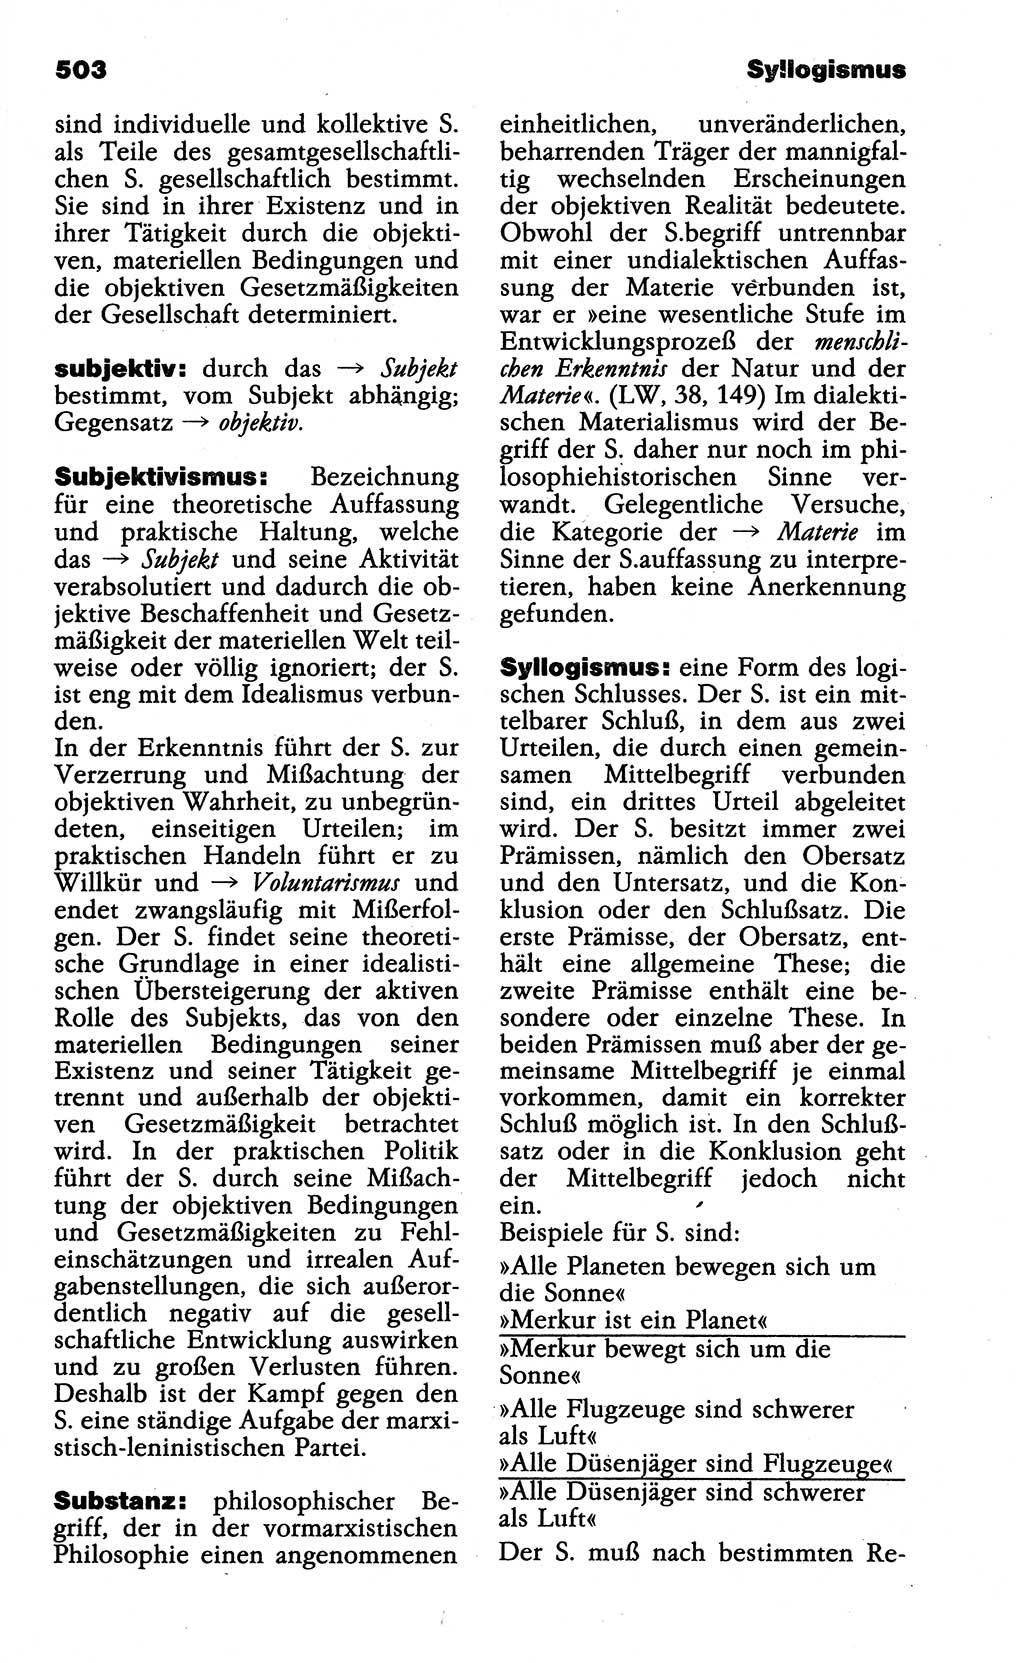 Wörterbuch der marxistisch-leninistischen Philosophie [Deutsche Demokratische Republik (DDR)] 1985, Seite 503 (Wb. ML Phil. DDR 1985, S. 503)